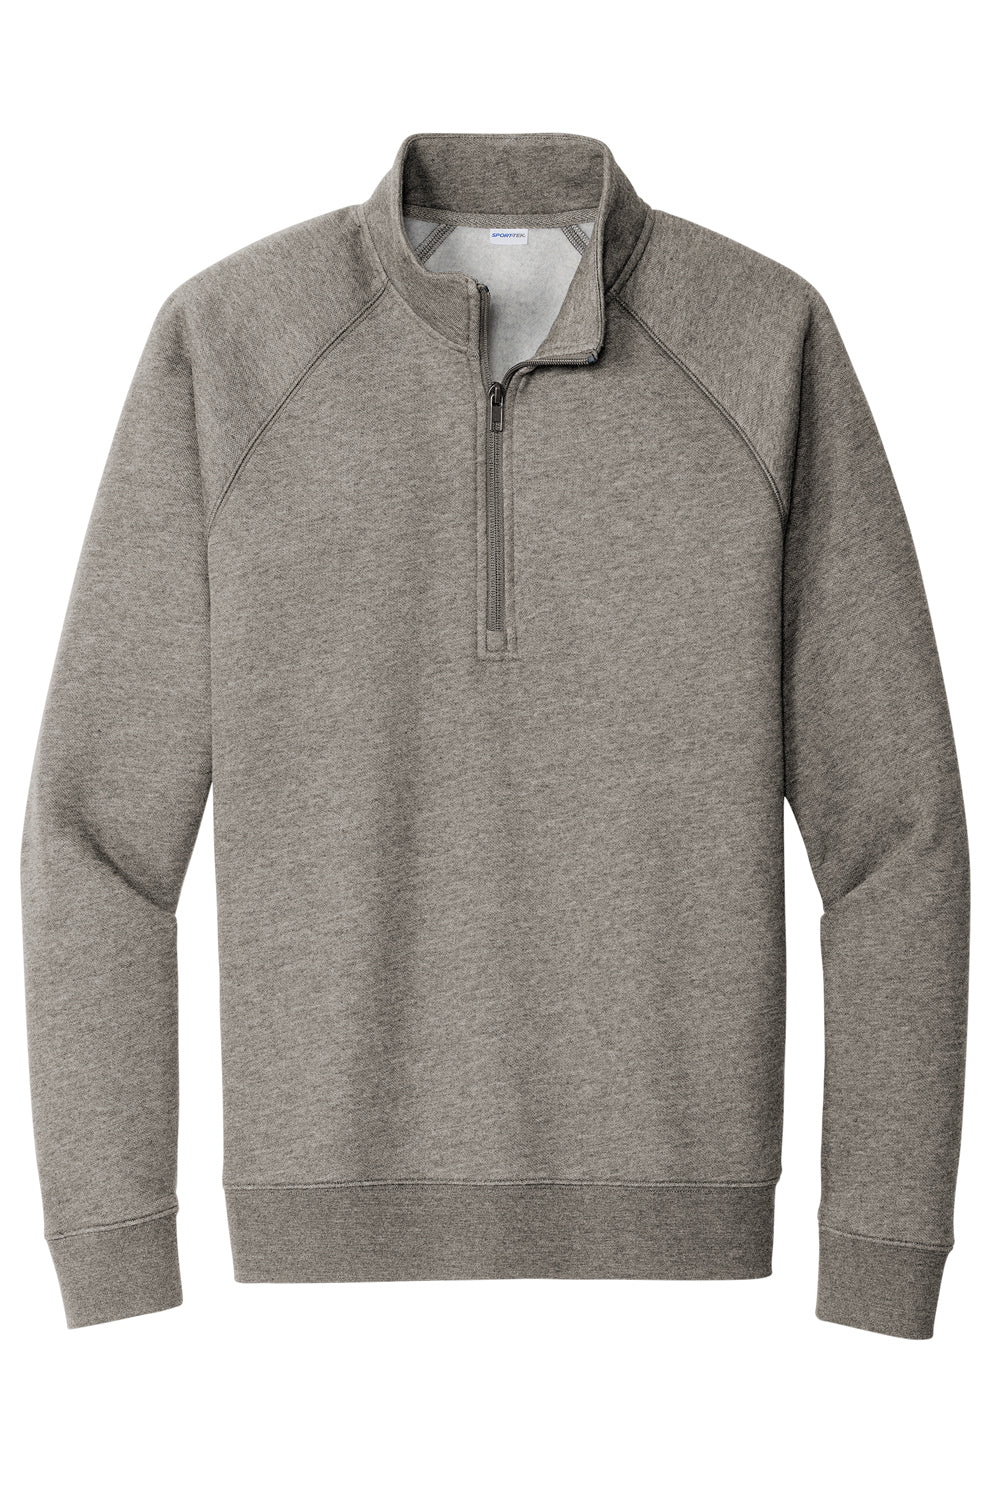 Sport-Tek STF202 Mens Drive Fleece 1/4 Zip Sweatshirt Heather Vintage Grey Flat Front